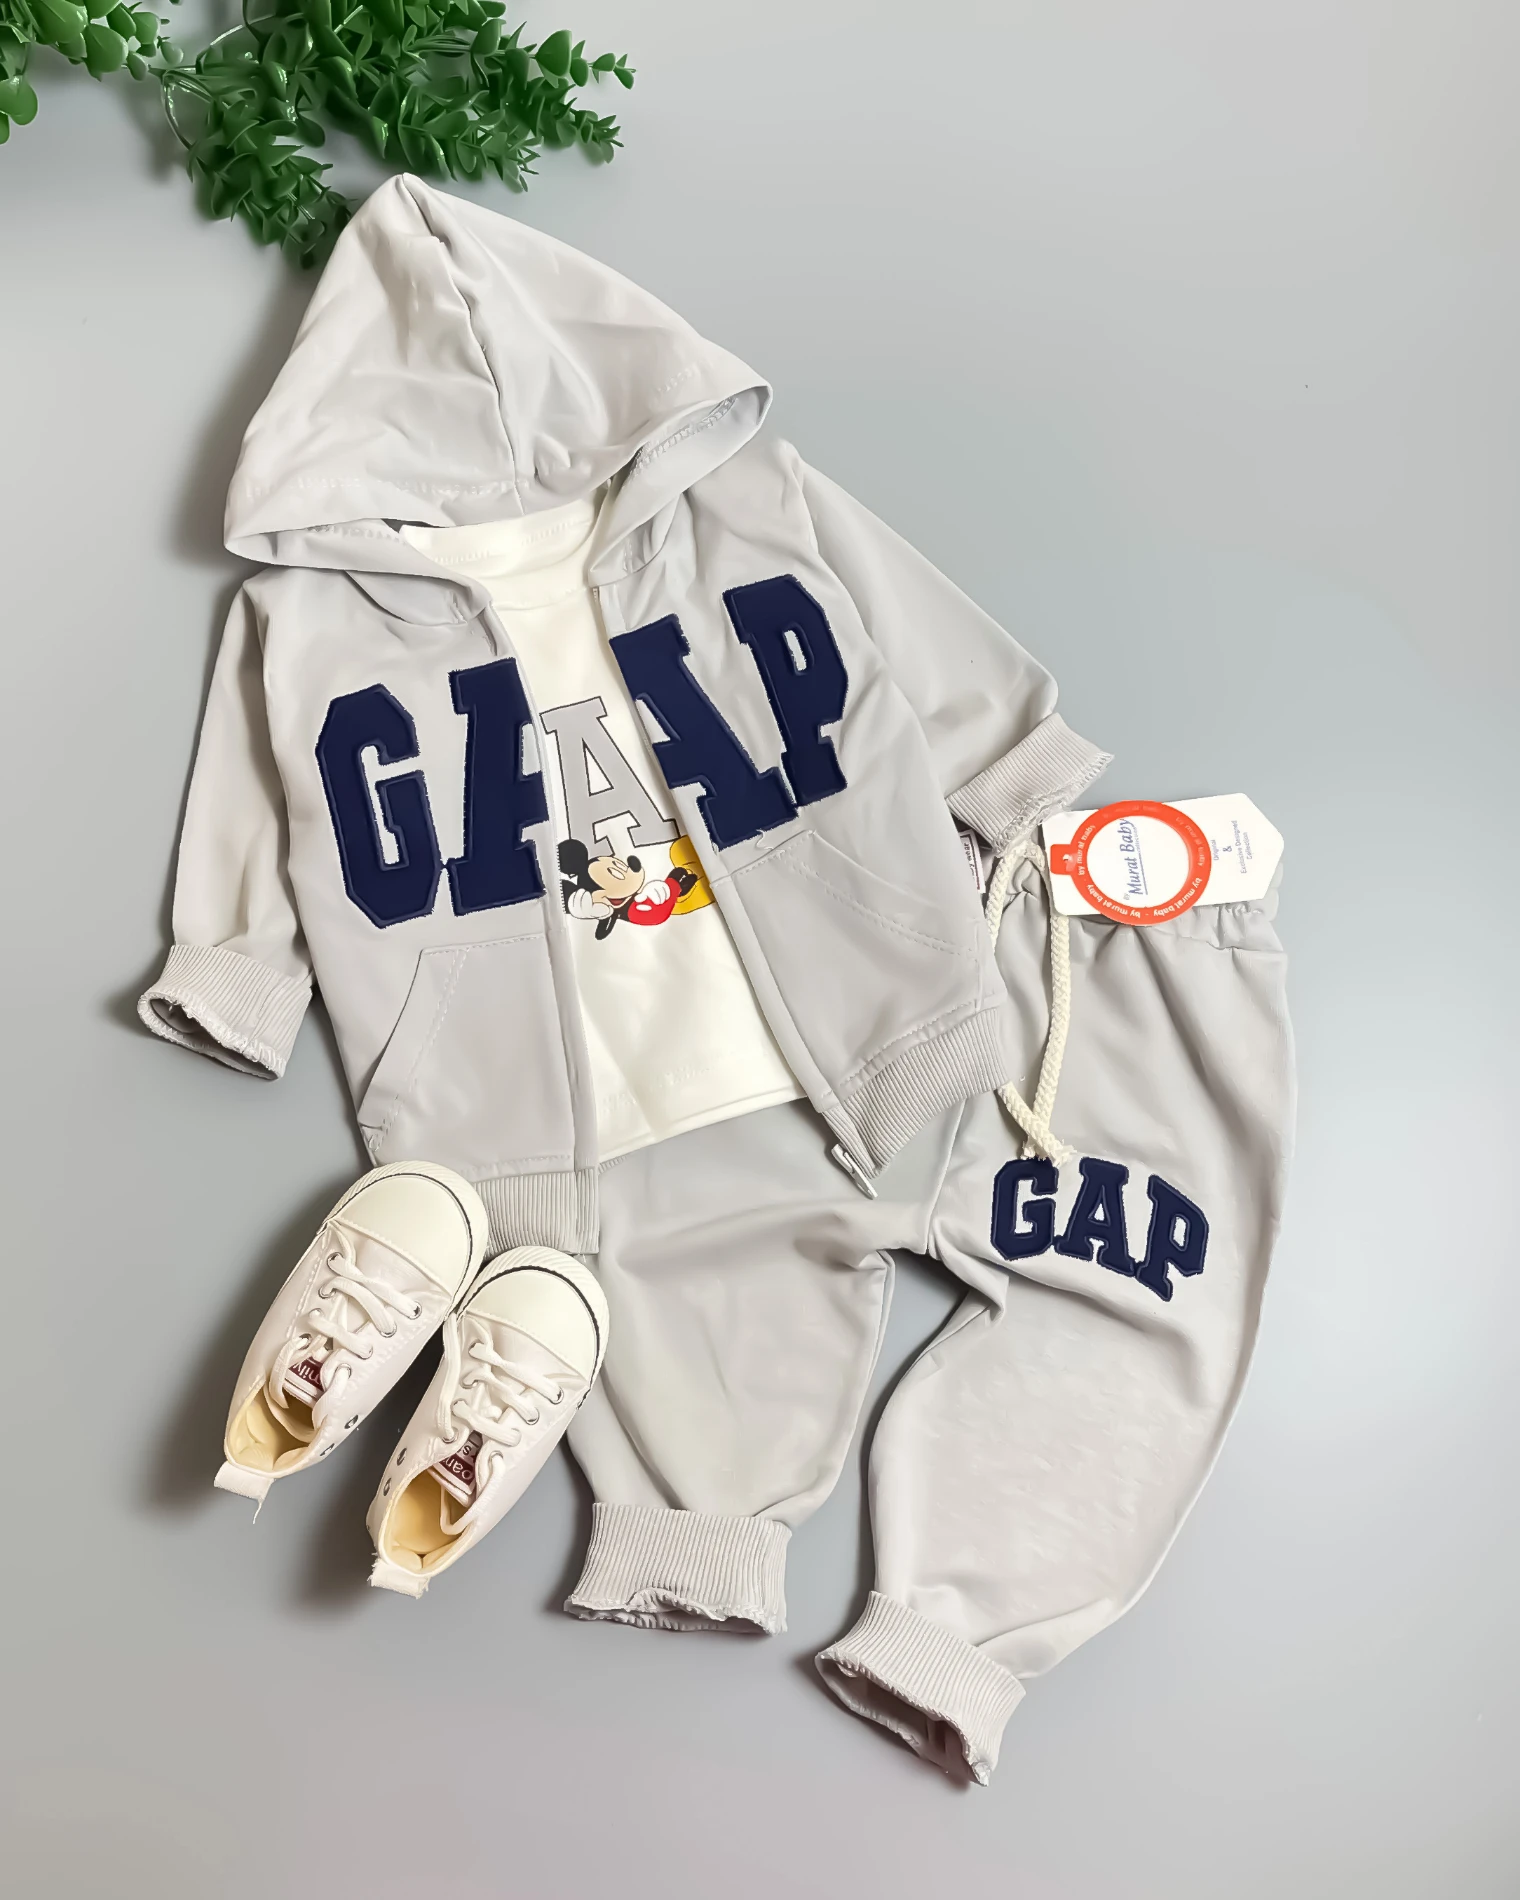 Miniapple Hırkalı Gapp Miki Nakışlı Badili 3’lü Bebek Takımı - GRİ